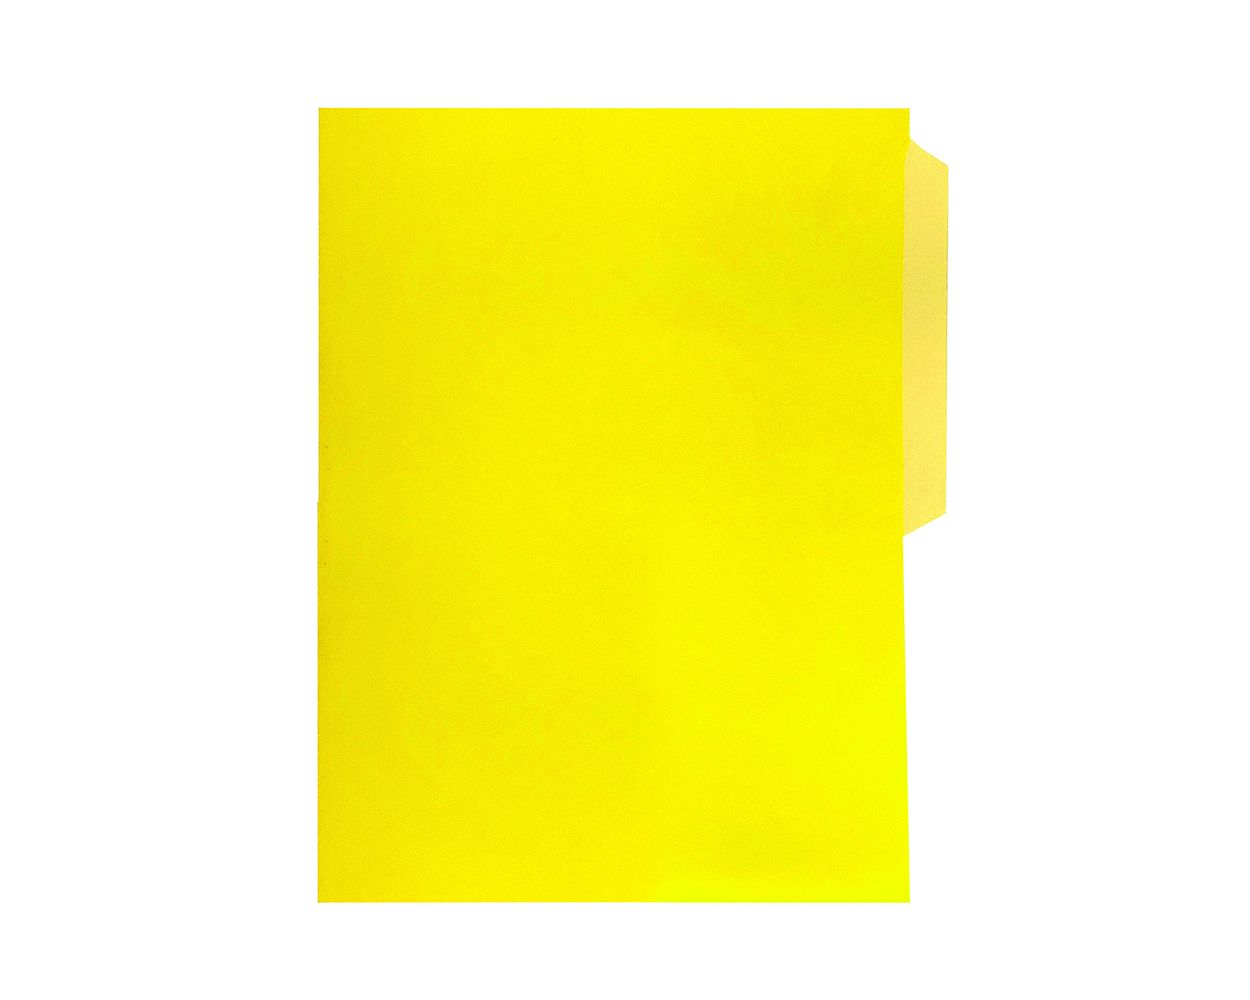 Fólder tamaño oficio amarillo c/100 Fólder de 1/2 ceja, color amarillo, Fortec, elaborado en cartulina bristol de 162 grs / 9.5 pts tamaño oficio, medidas: 23.8 X 34.5 cm, suaje lateral y superior para broche de 8 cm y ceja redondeada, 1 paquete con 100 fólders. - FOM-13